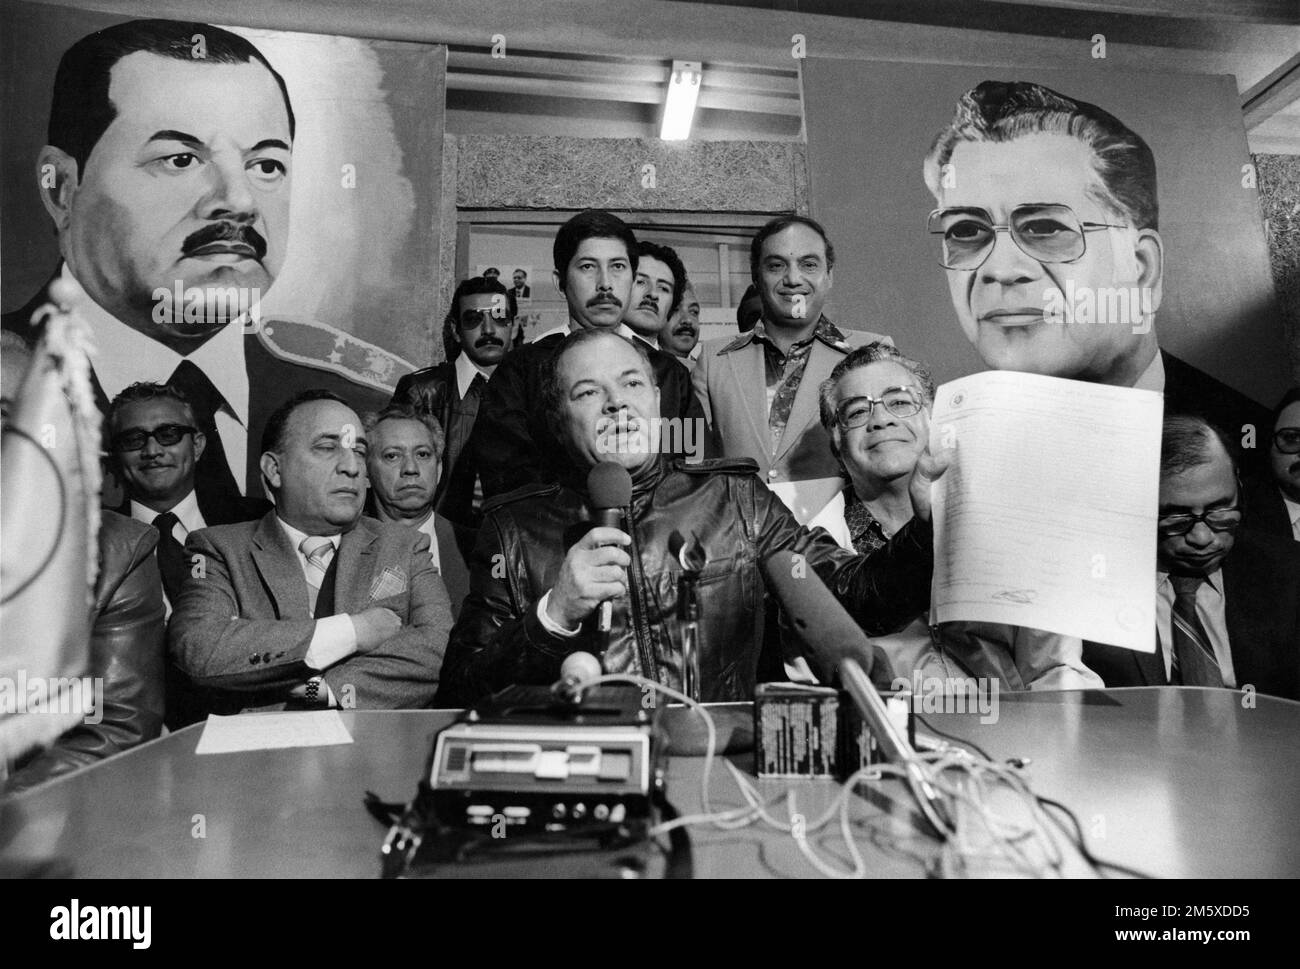 Città del Guatemala, 10th marzo 1982; il generale Guevara si è dichiarato presidente, tenendo un documento che egli ha detto dimostra che le elezioni fraudolente tenutesi il 7th marzo è stato libero ed equo. Due settimane dopo un colpo di stato dell'esercito guidato dal generale Rios Montt prese il potere e seguì un'ulteriore repressione. Foto Stock